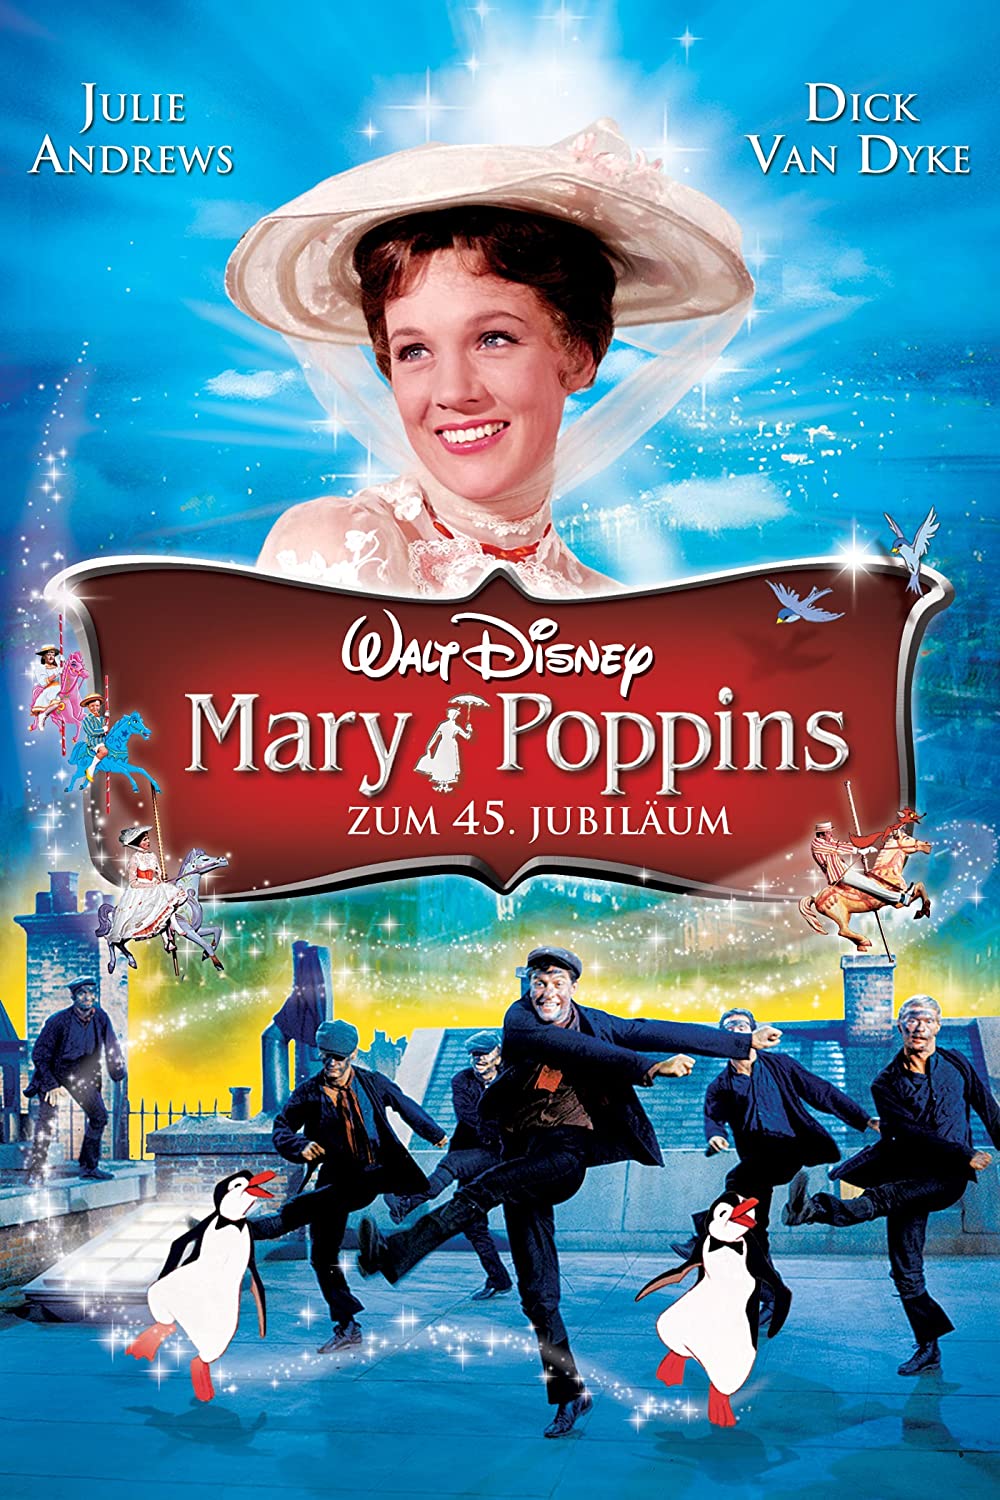 Filmbeschreibung zu Mary Poppins